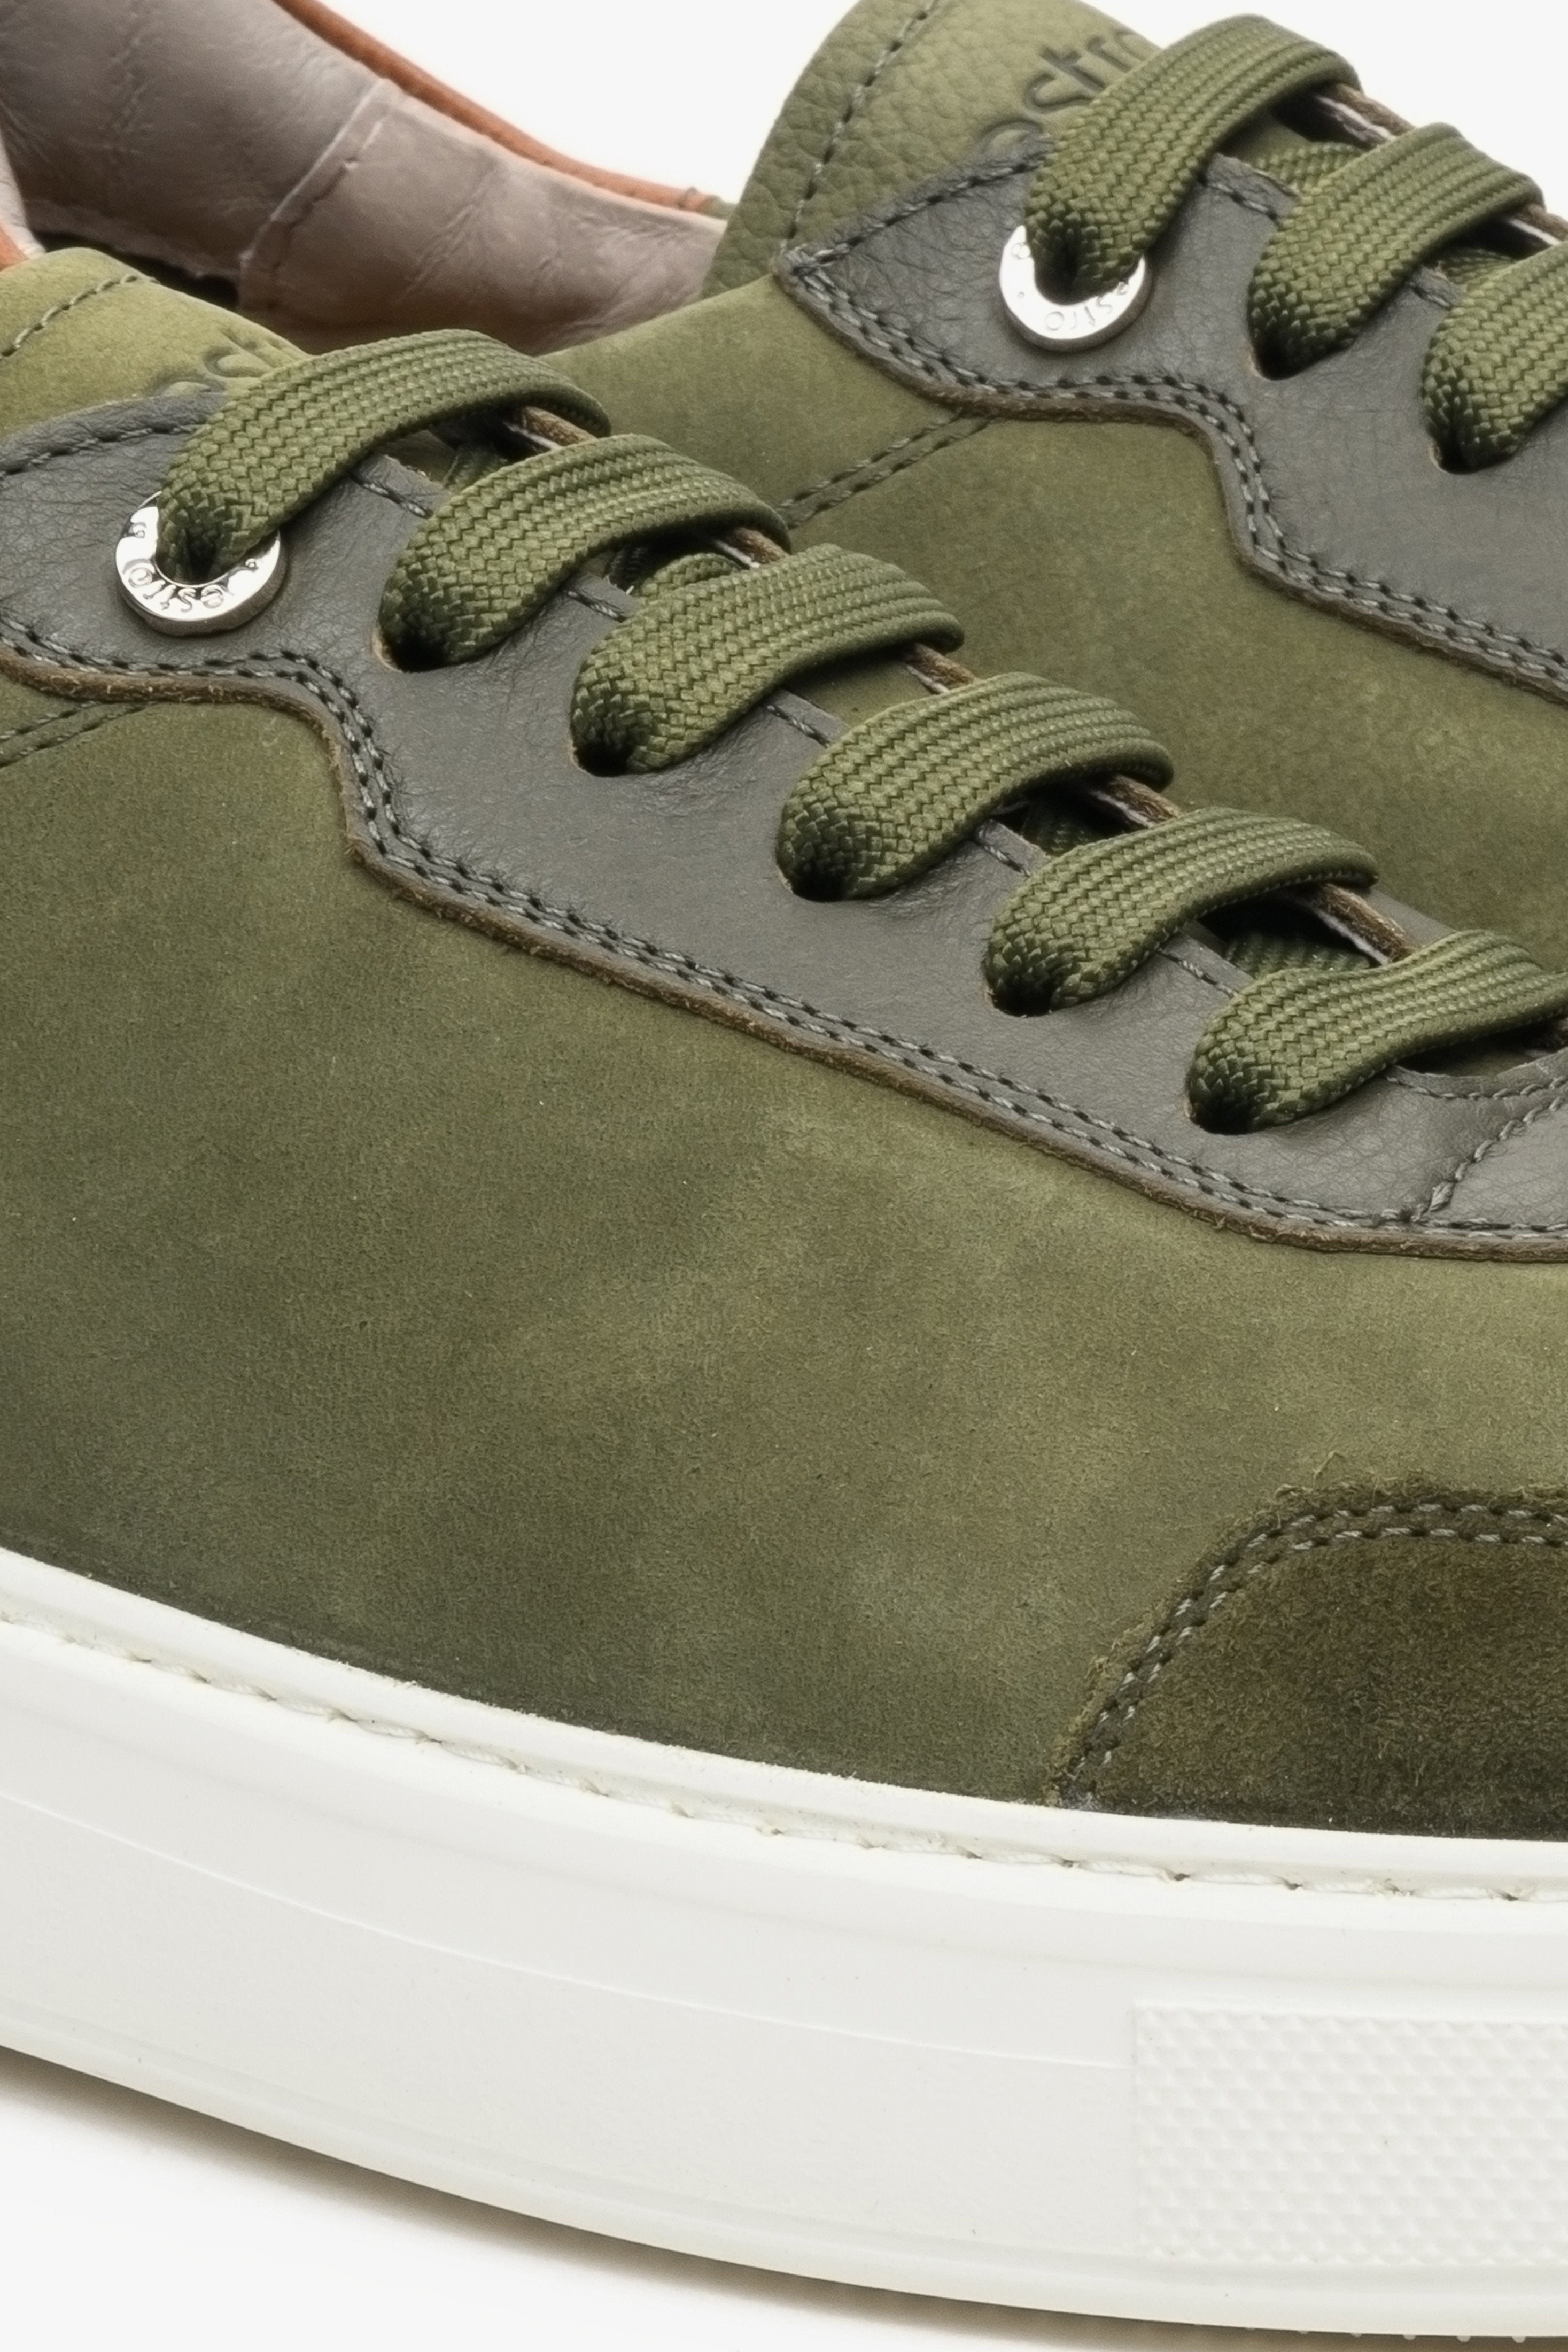 Sneakersy męskie zielono-brązowe Estro z nubuku i skóry, sznurowane Estro - zbliżenie na system wiązań.